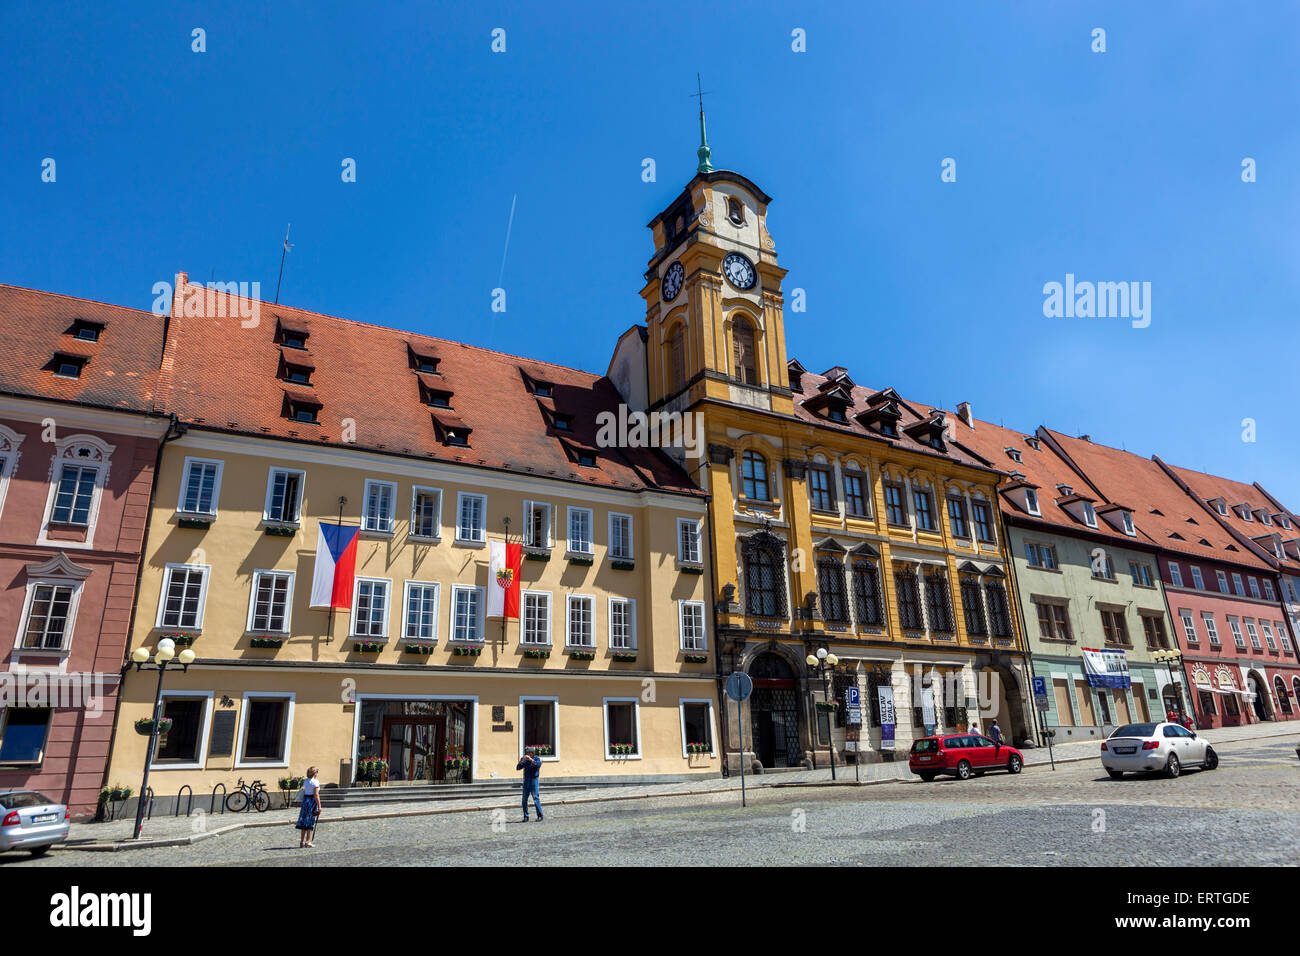 Hôtel de ville de Cheb République tchèque, Europe Banque D'Images